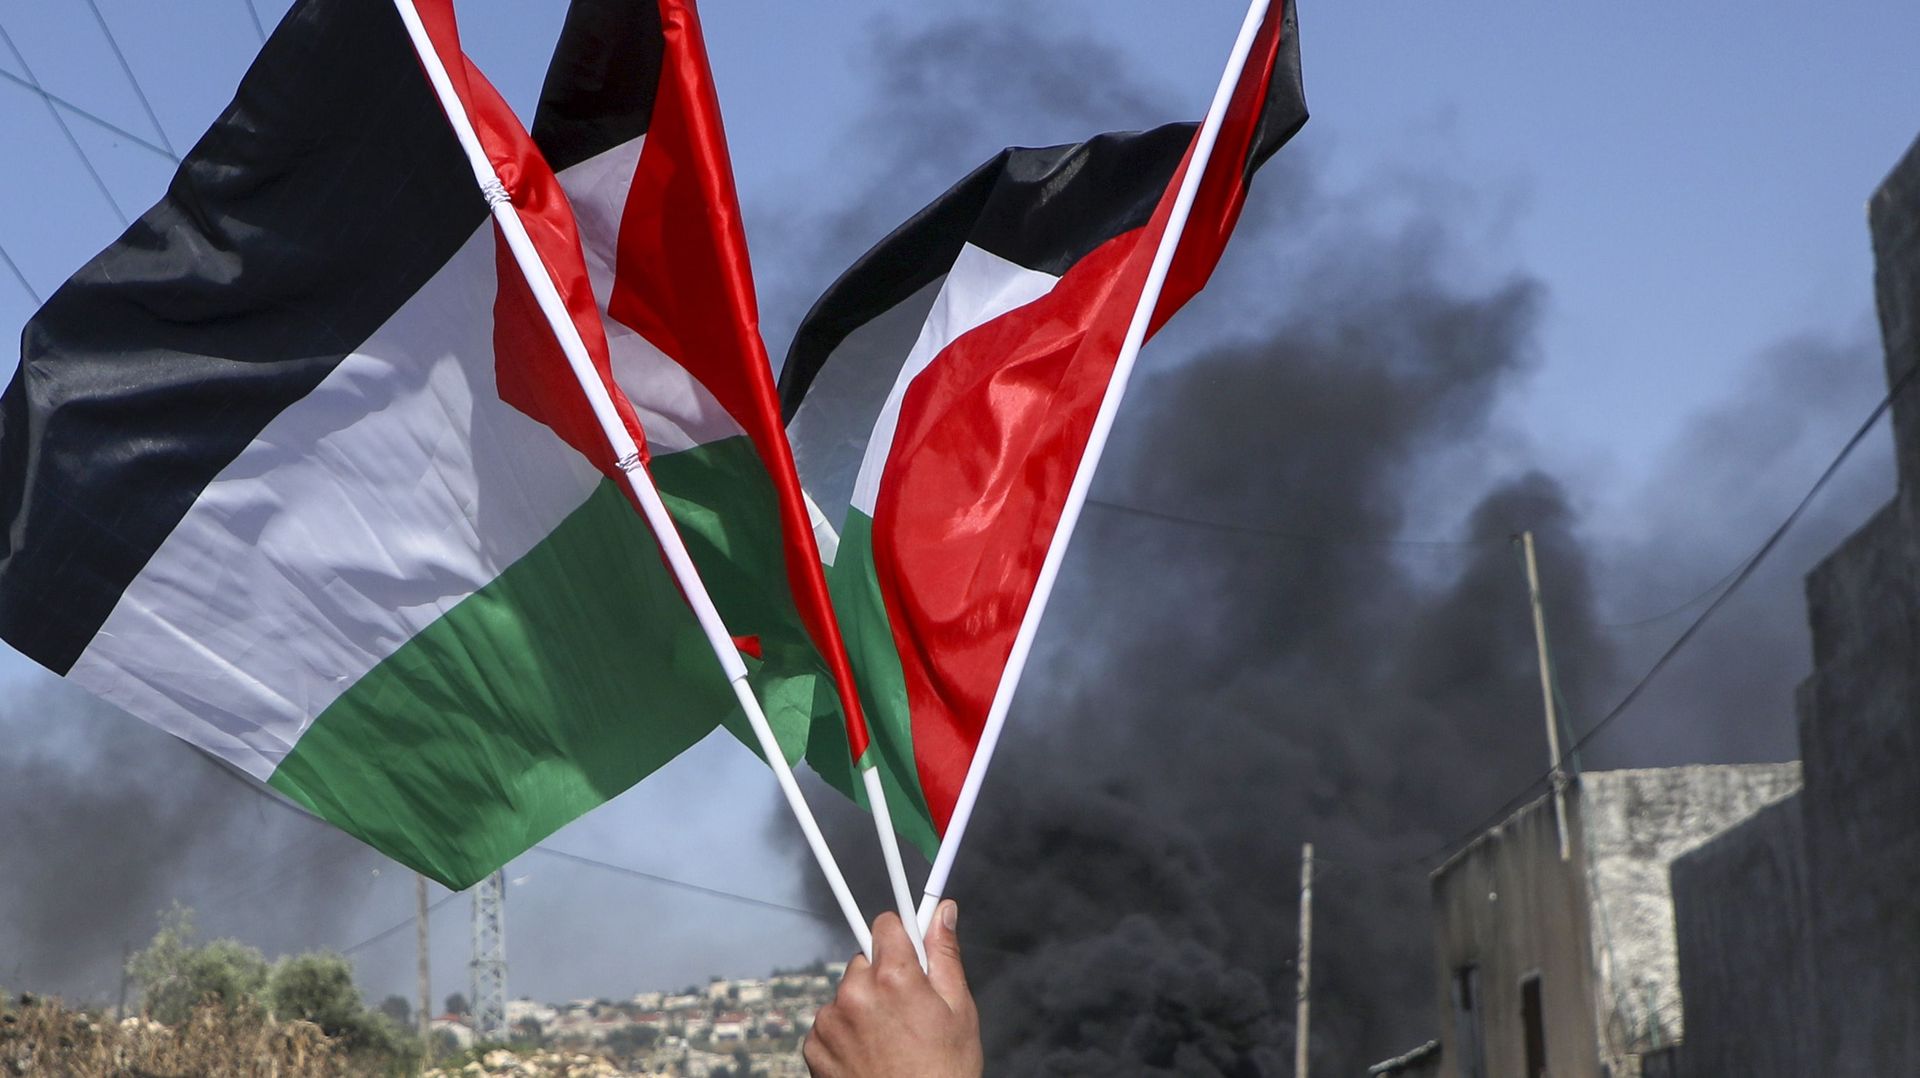 Un manifestant palestinien brandit le drapeau national lors d'une manifestation dans le village de Kfar Qaddum en Cisjordanie occupée par Israël contre les plans de l'État juif d'annexer une partie du territoire, le 6 juin 2020 (image d'illustration) 